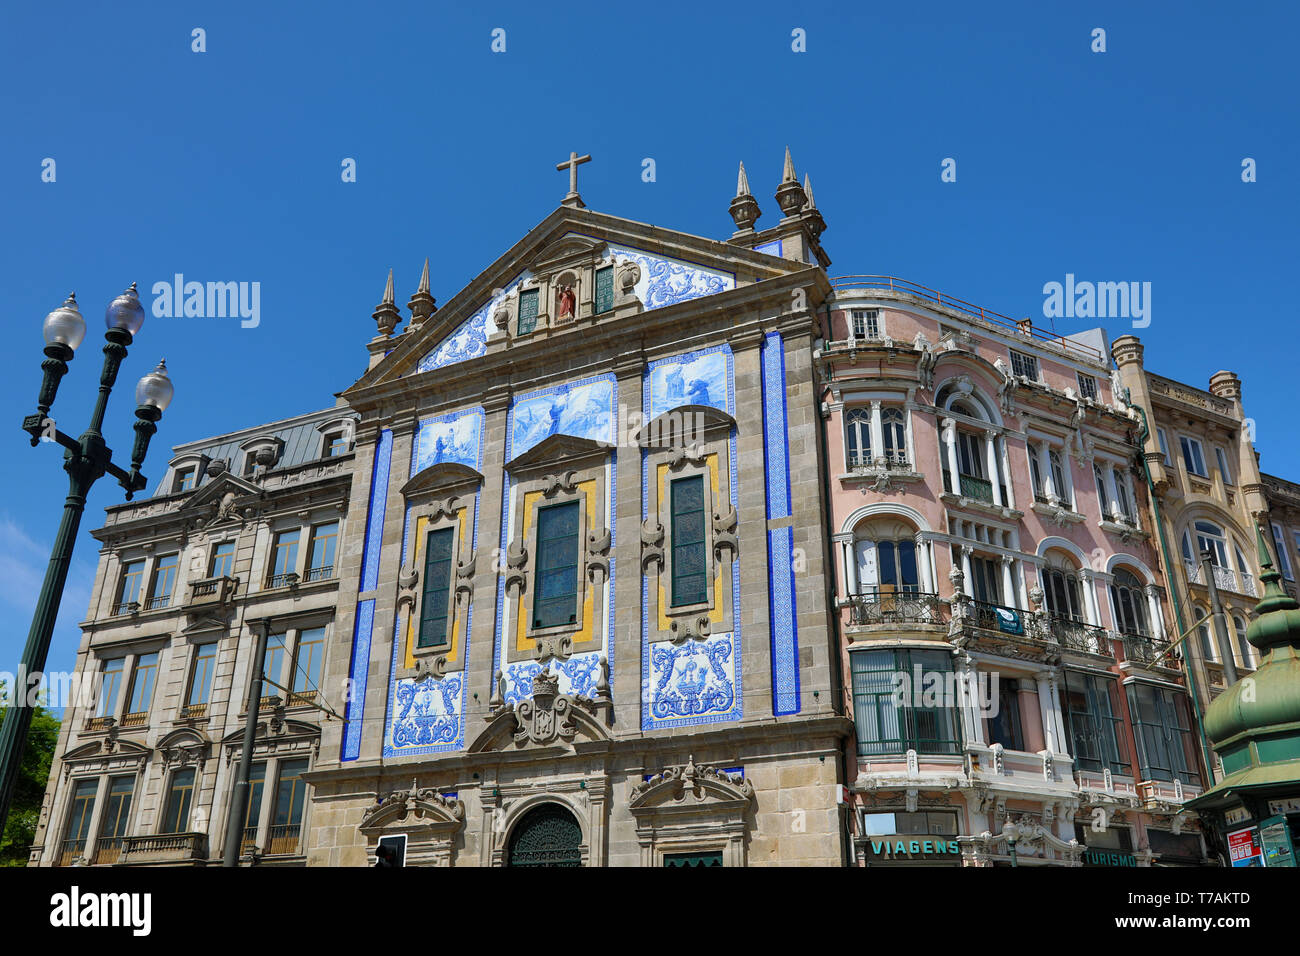 Carreaux bleu façade de l'église Saint-Antoine de Congregados, Porto, Portugal Banque D'Images